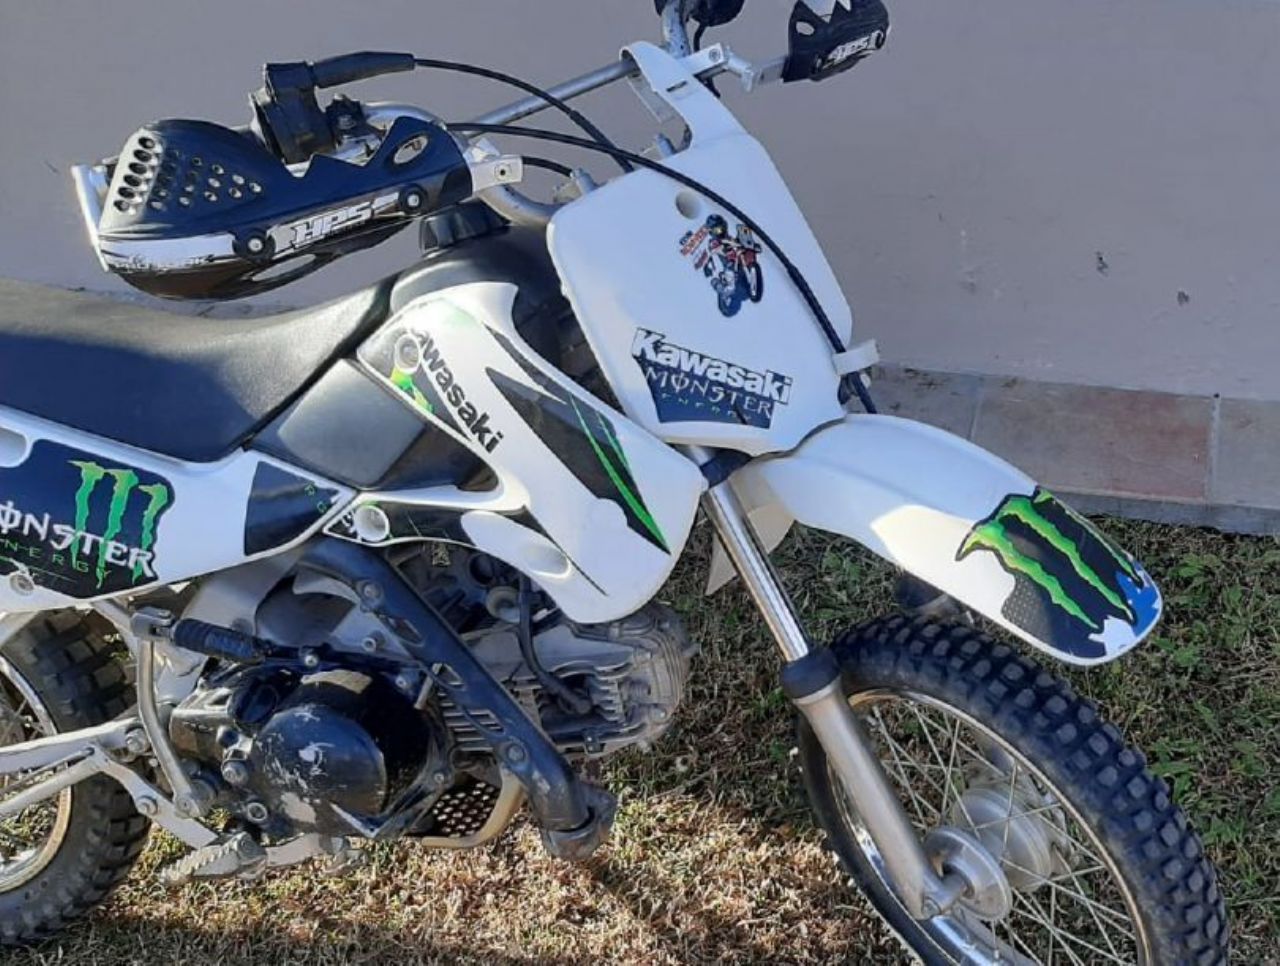 Kawasaki KLX Usada en Mendoza, deRuedas